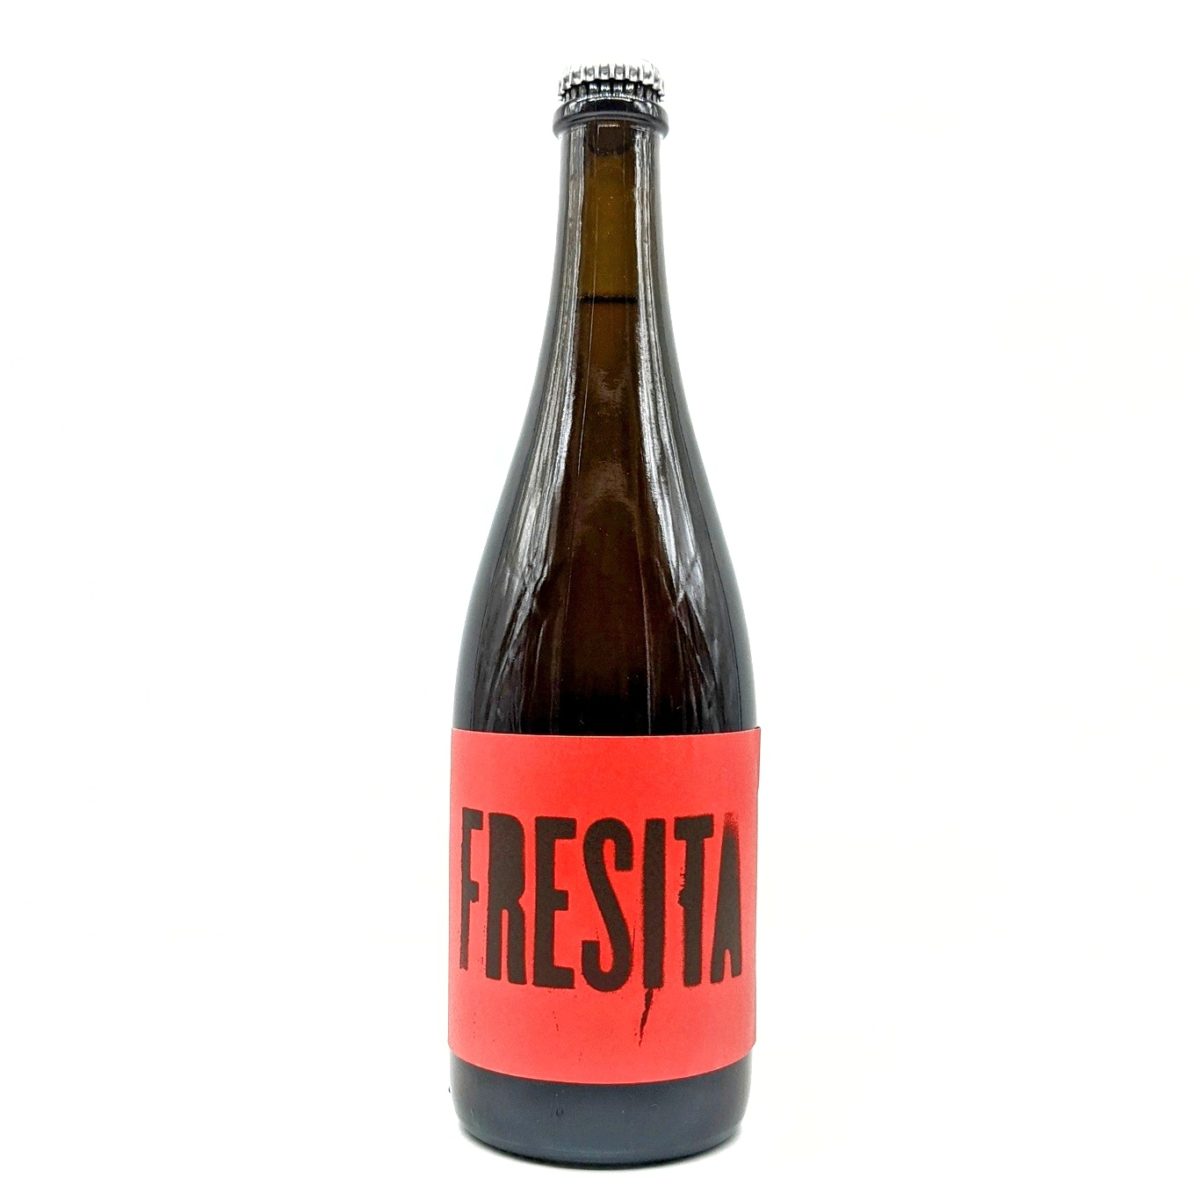 Fresita - Cyclic Beer Farm